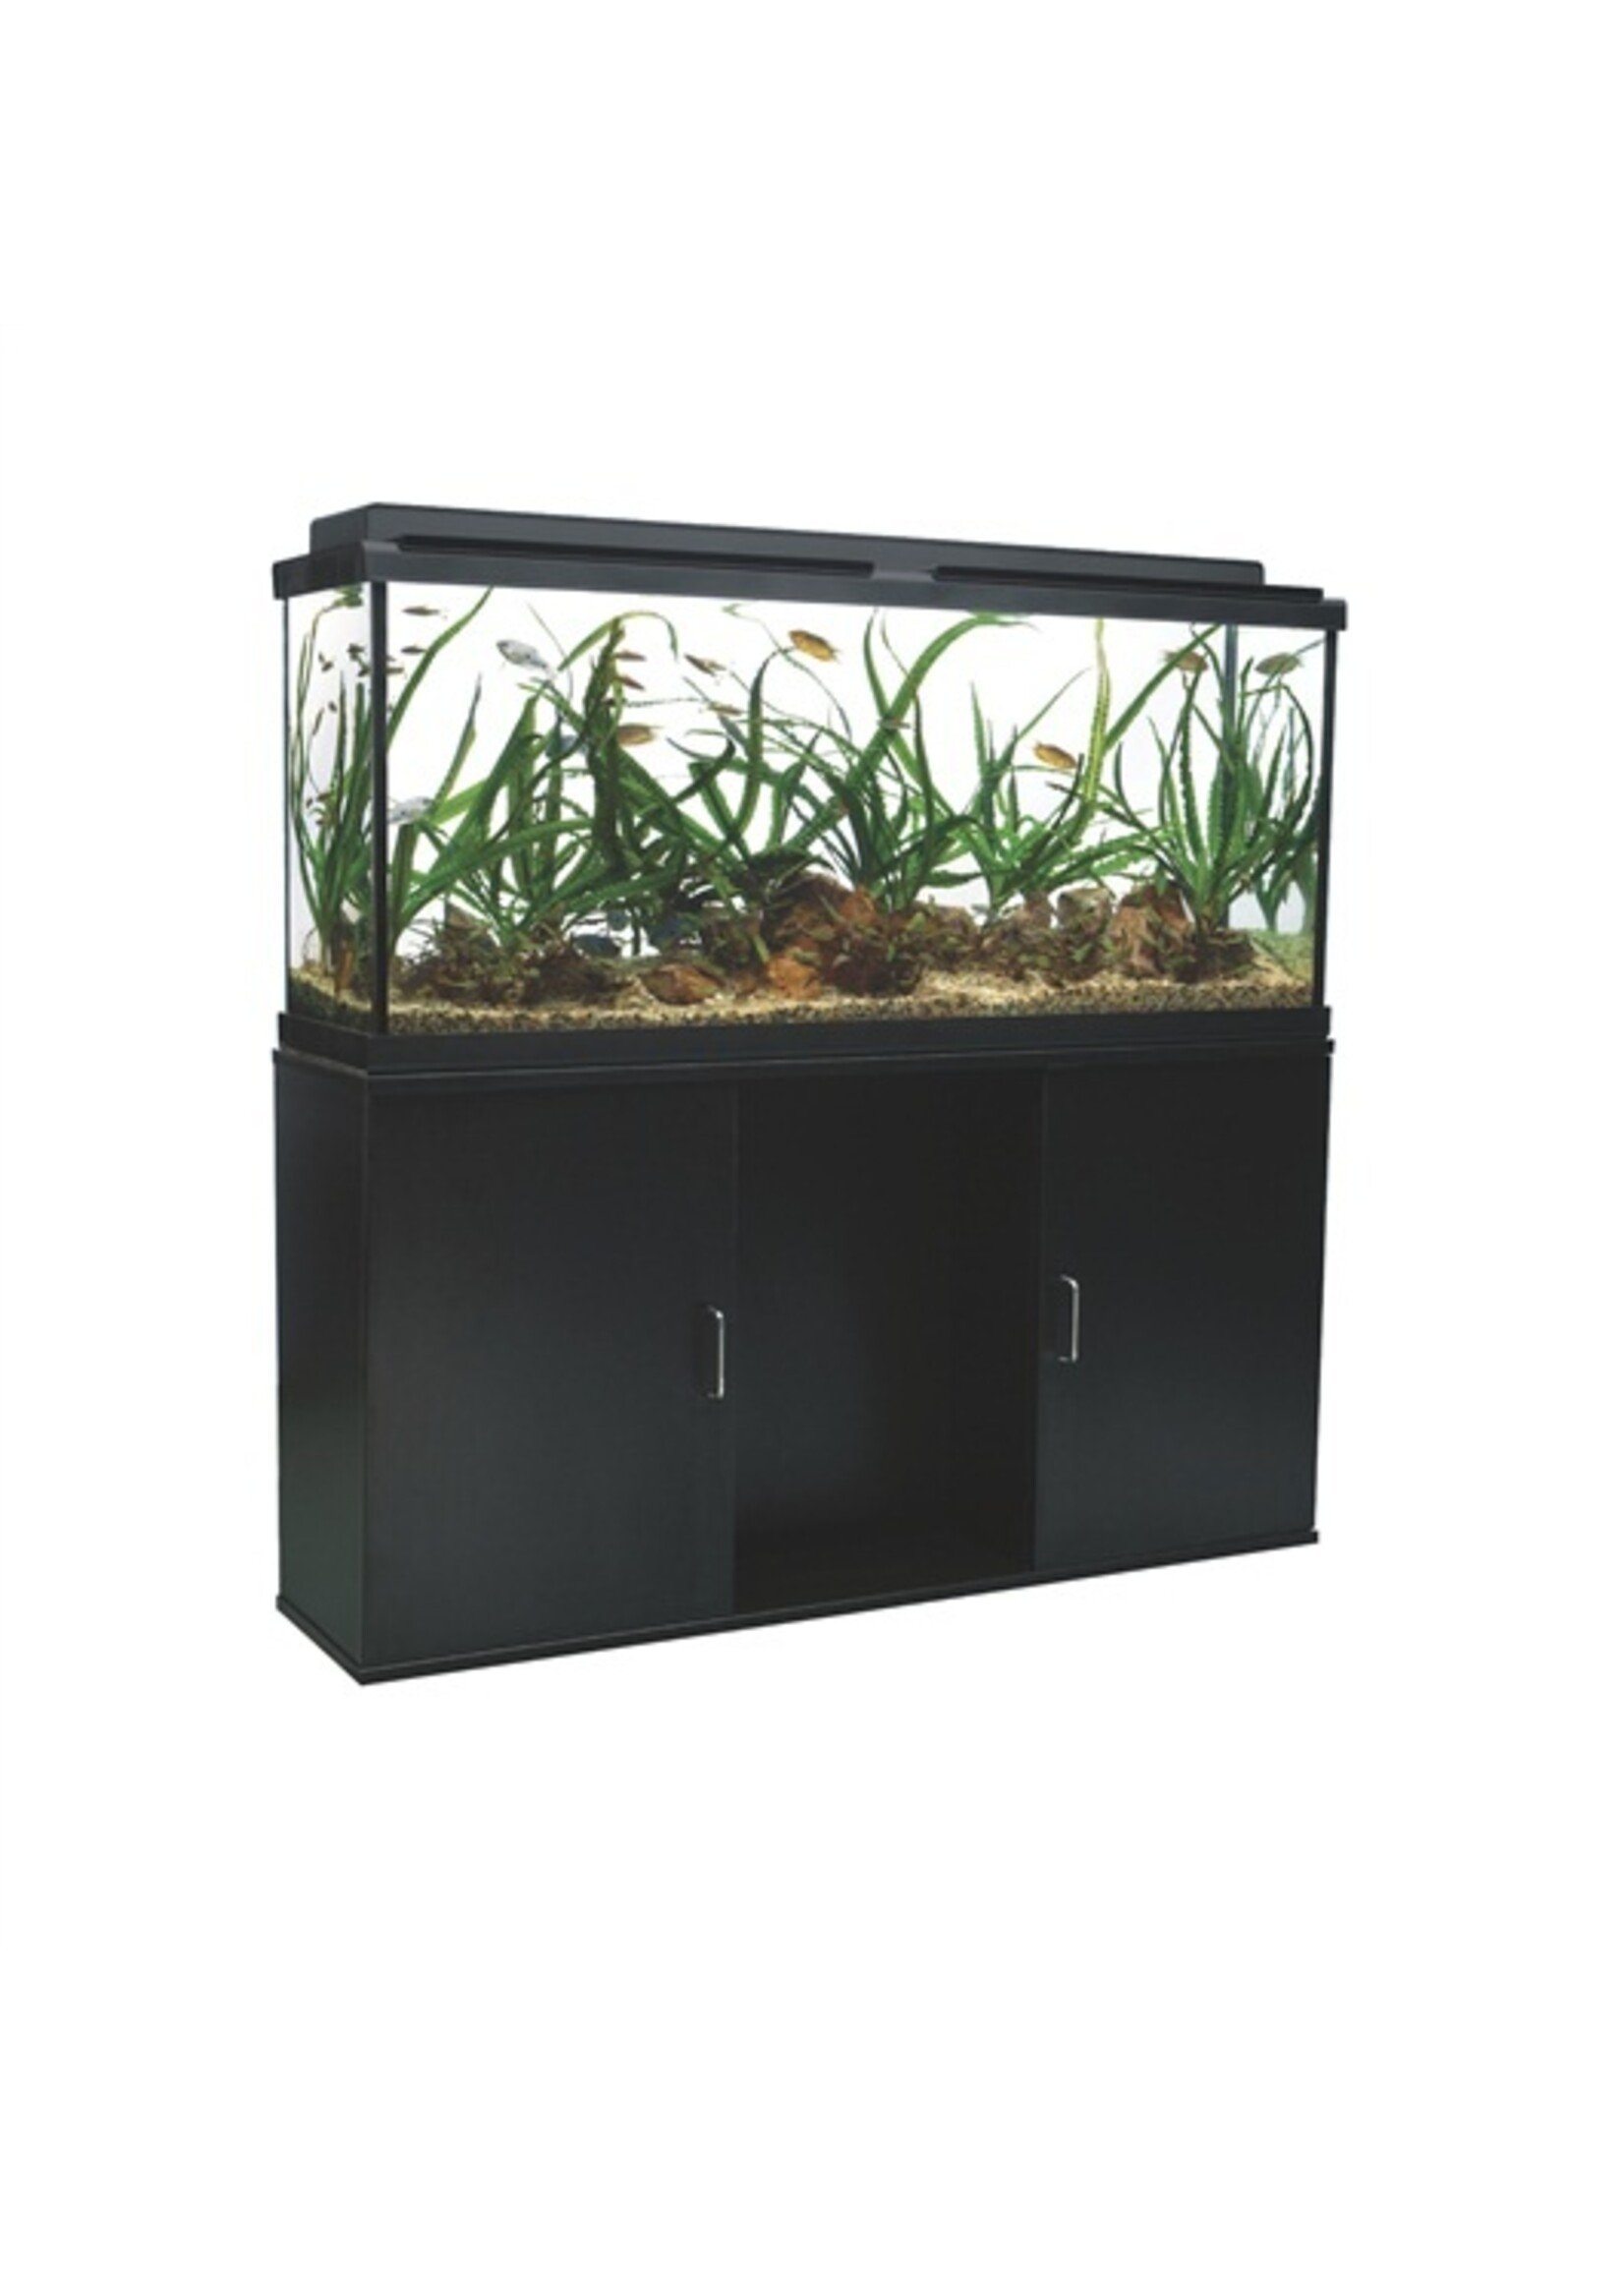 Fluval Fluval Aquarium Cabinet 48.78"x13.25"x26" Black